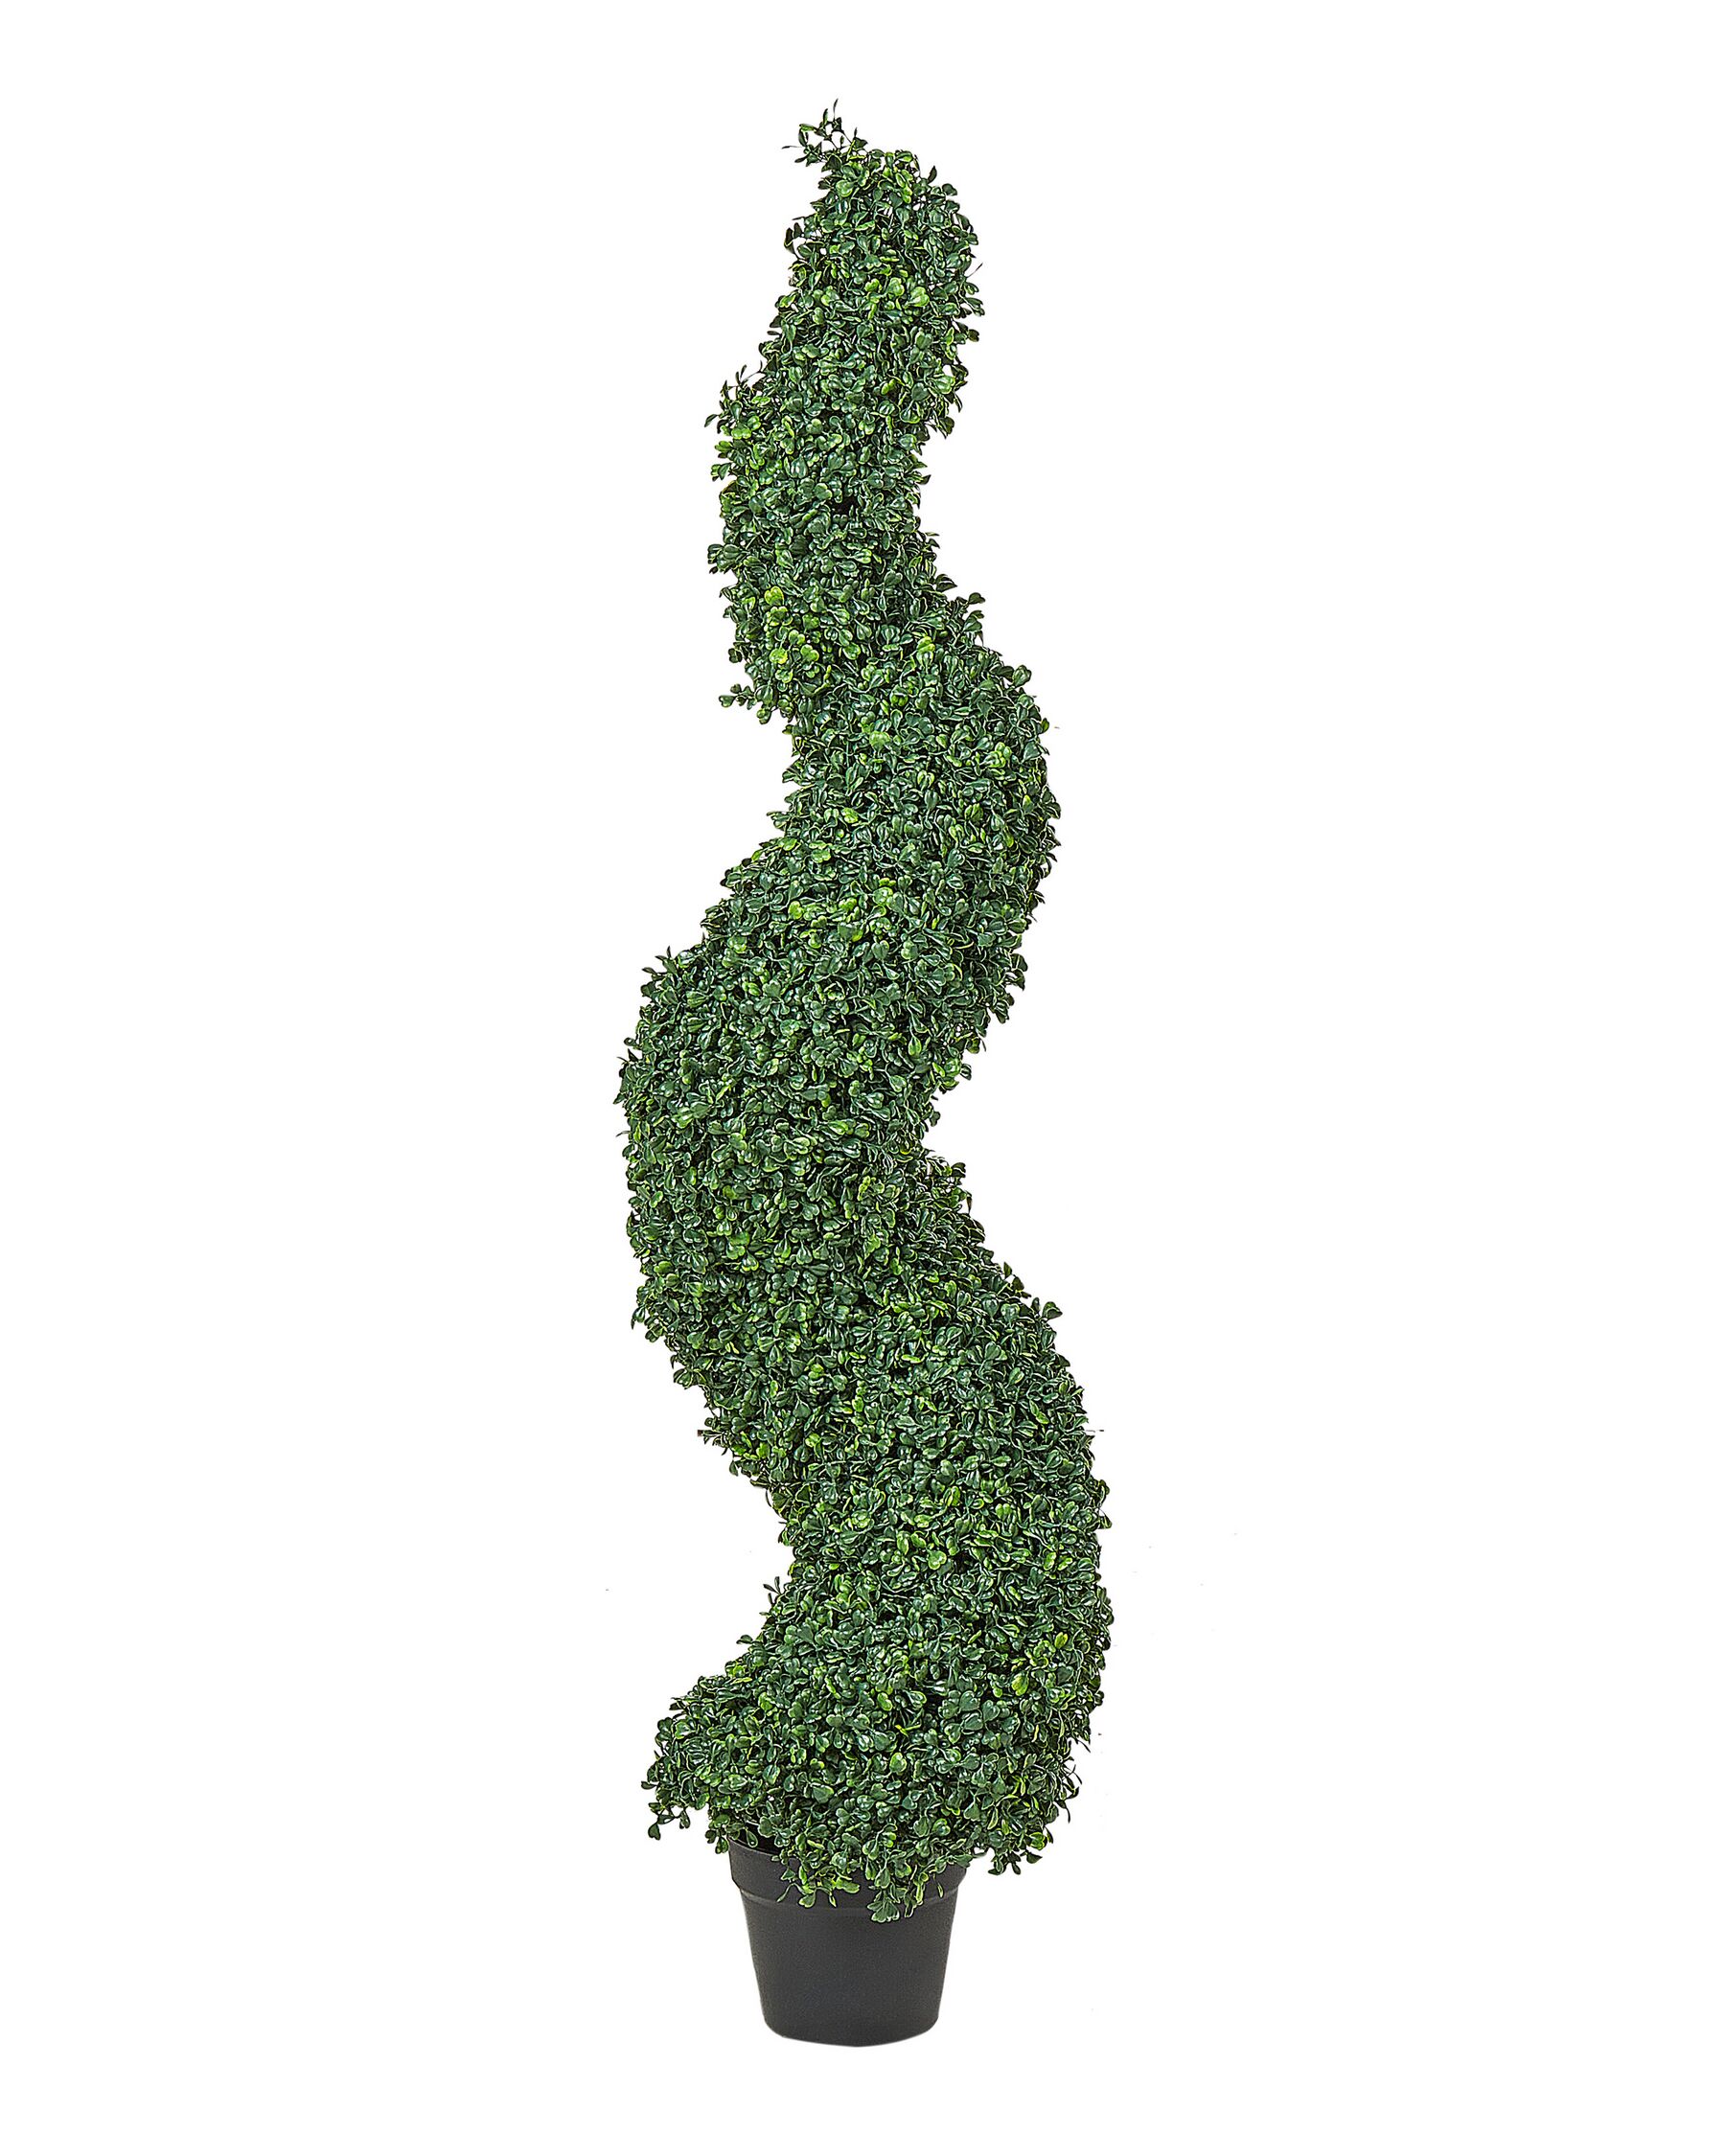 Sztuczna roślina doniczkowa 120 cm BOXWOOD SPIRAL TREE_901101